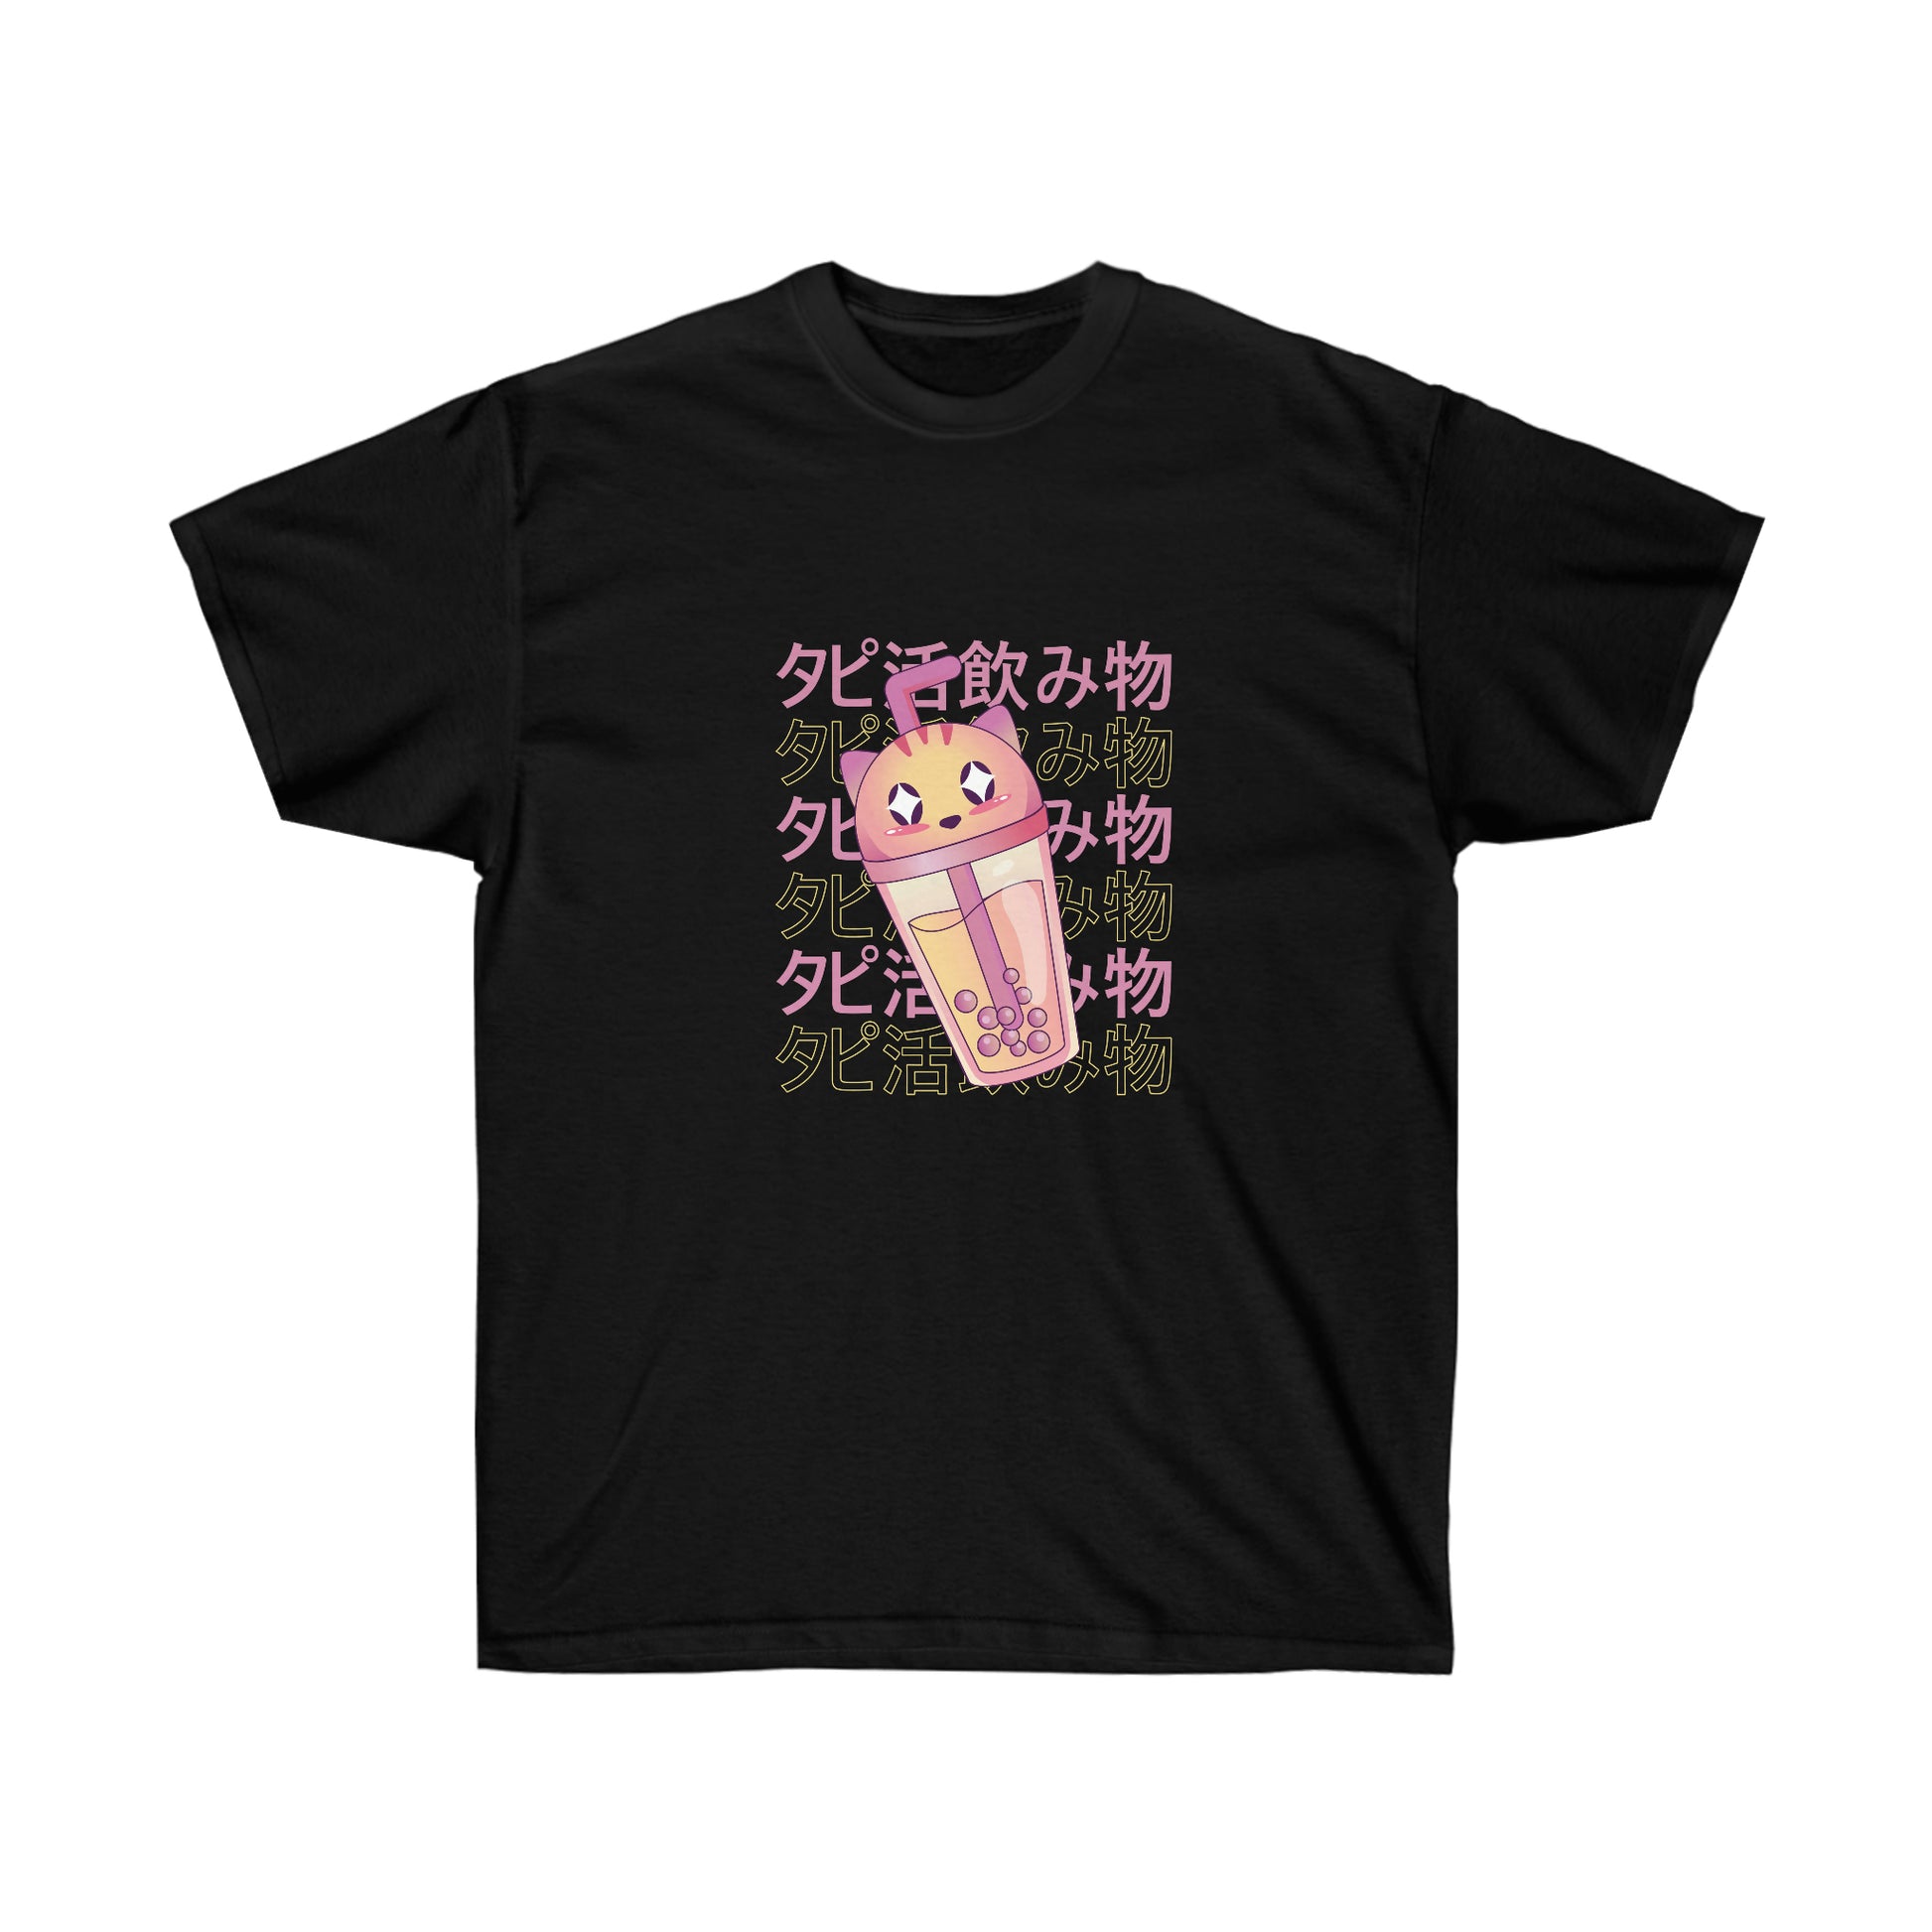 Kawaii Sweatshirt, Kawaii Clothing, Kawaii Clothes, Yami Kawaii Aesthetic, Pastel Kawaii Cat Boba Tea Sweatshirt T-Shirt